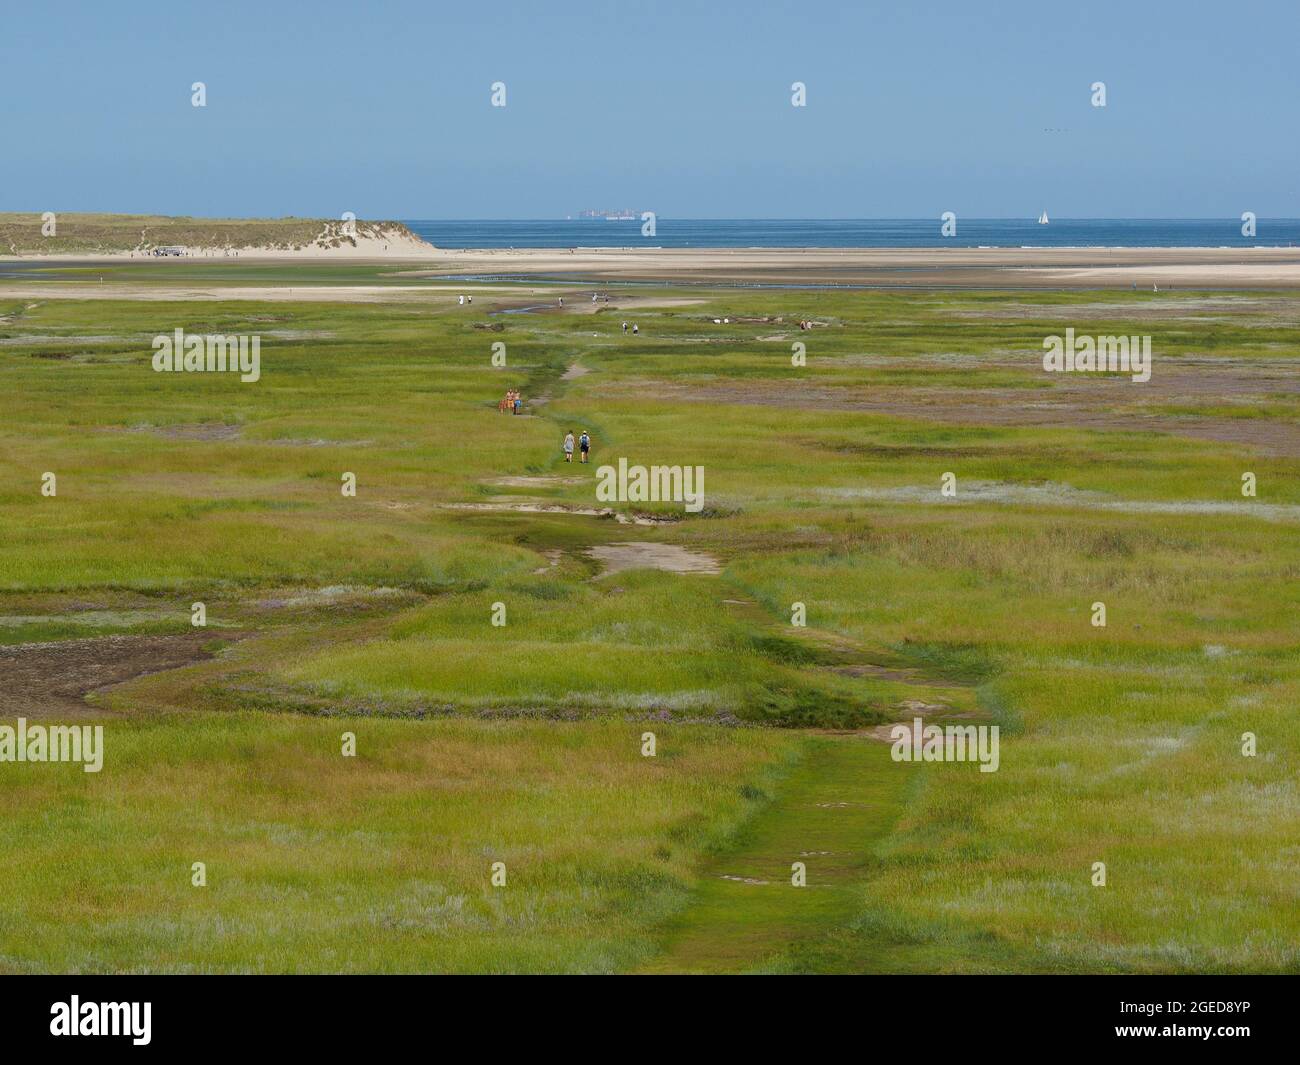 El parque natural Slufter en la Isla Texel es un ambiente muy especial; debido a la brecha en las dunas, el agua salada desborda la tierra regularmente. Texel, Foto de stock